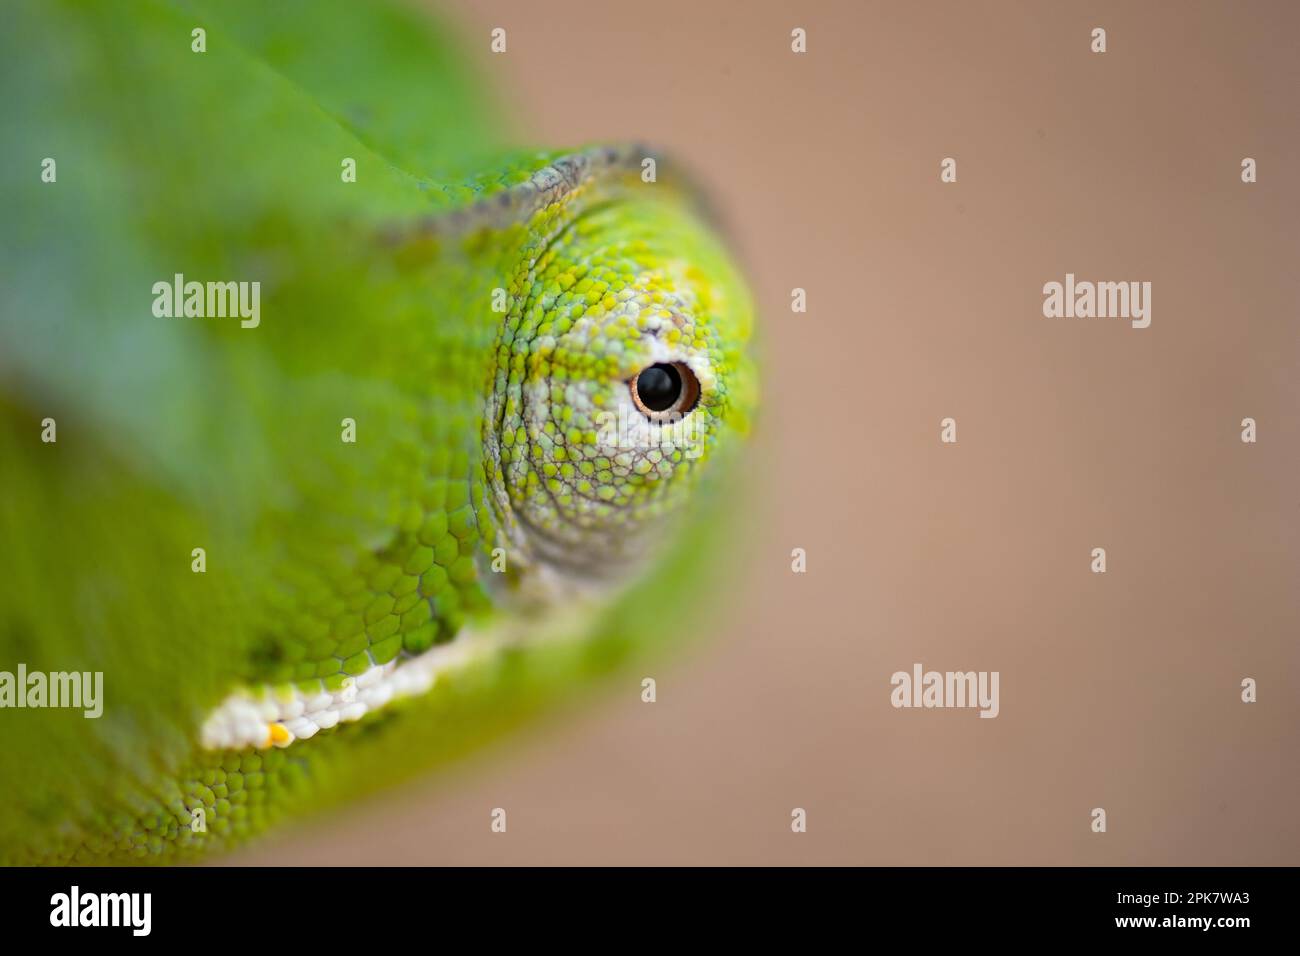 A close up of a chameleon's eye, Chamaeleonidae. Stock Photo